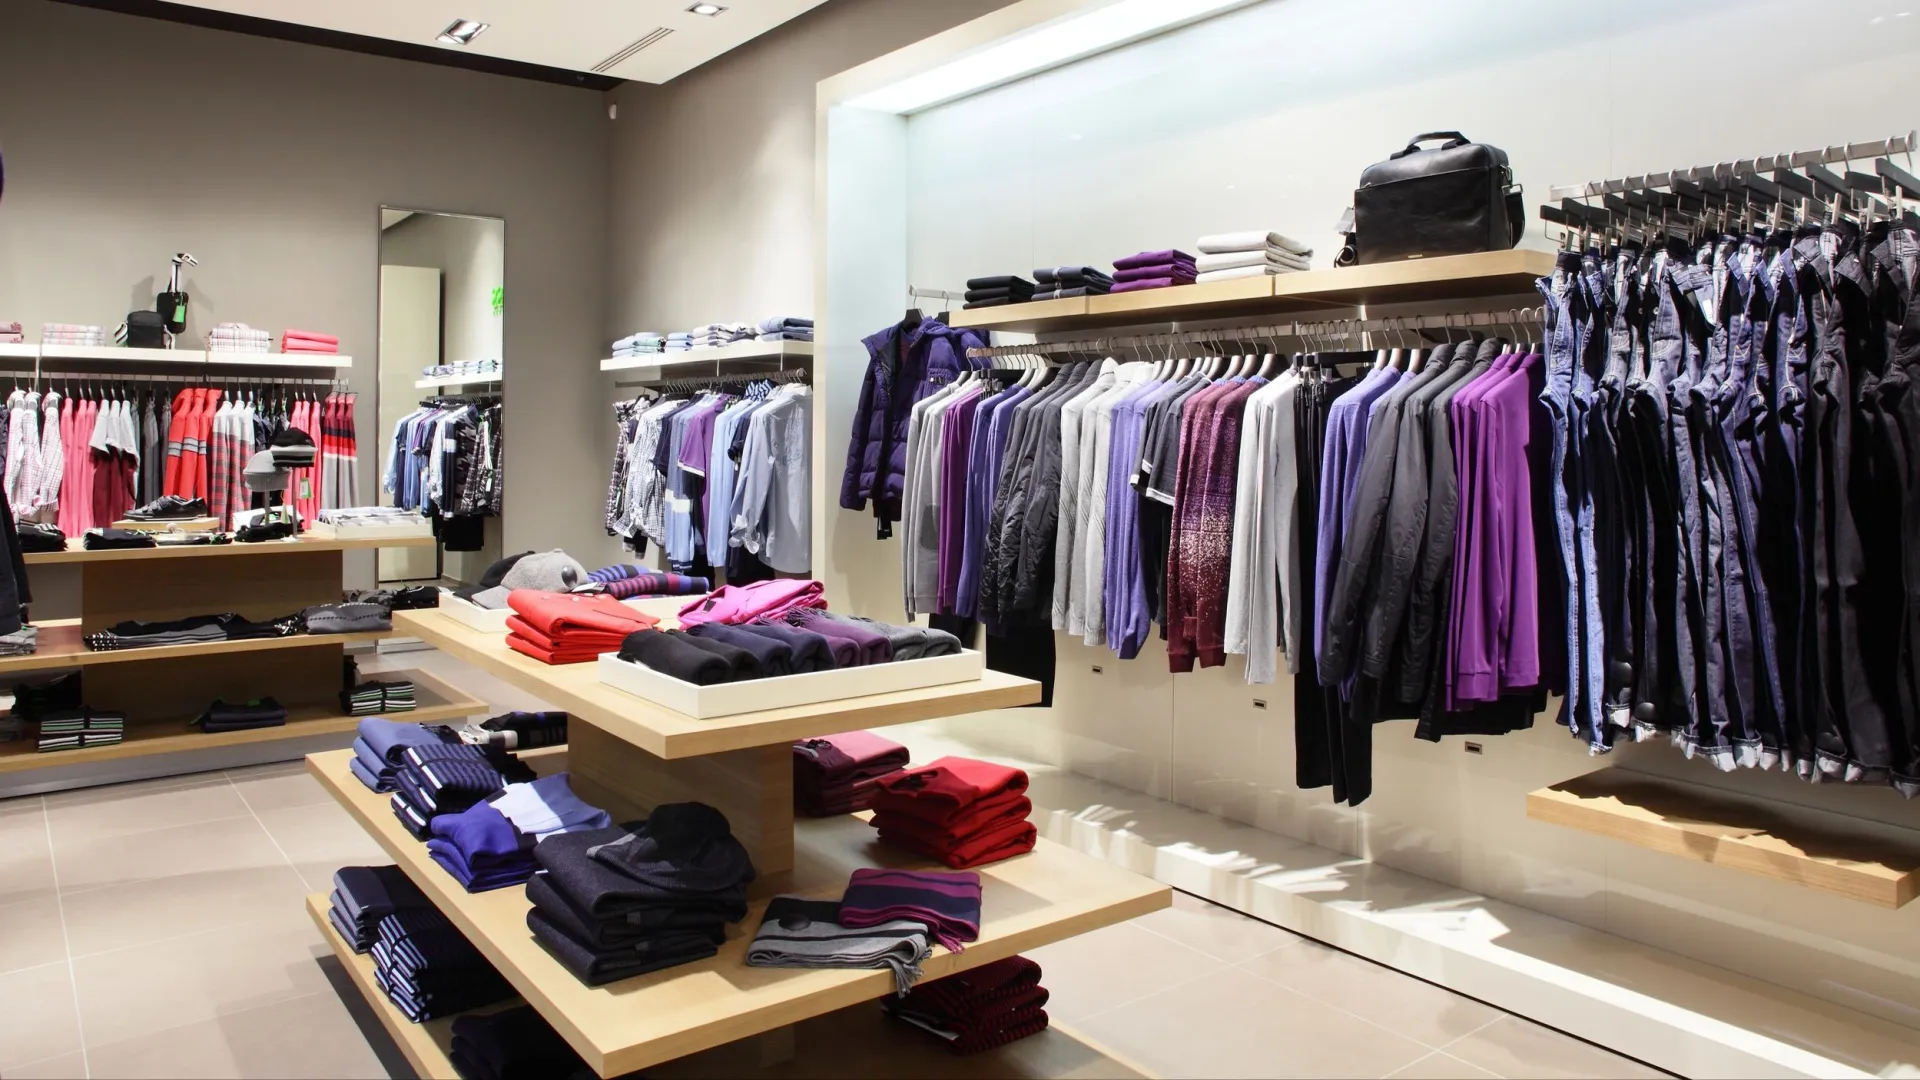 Модельеры создают коллекции, основной цвет в которых — фиолетовый. Фото: fiphoto / Shutterstock / Fotodom